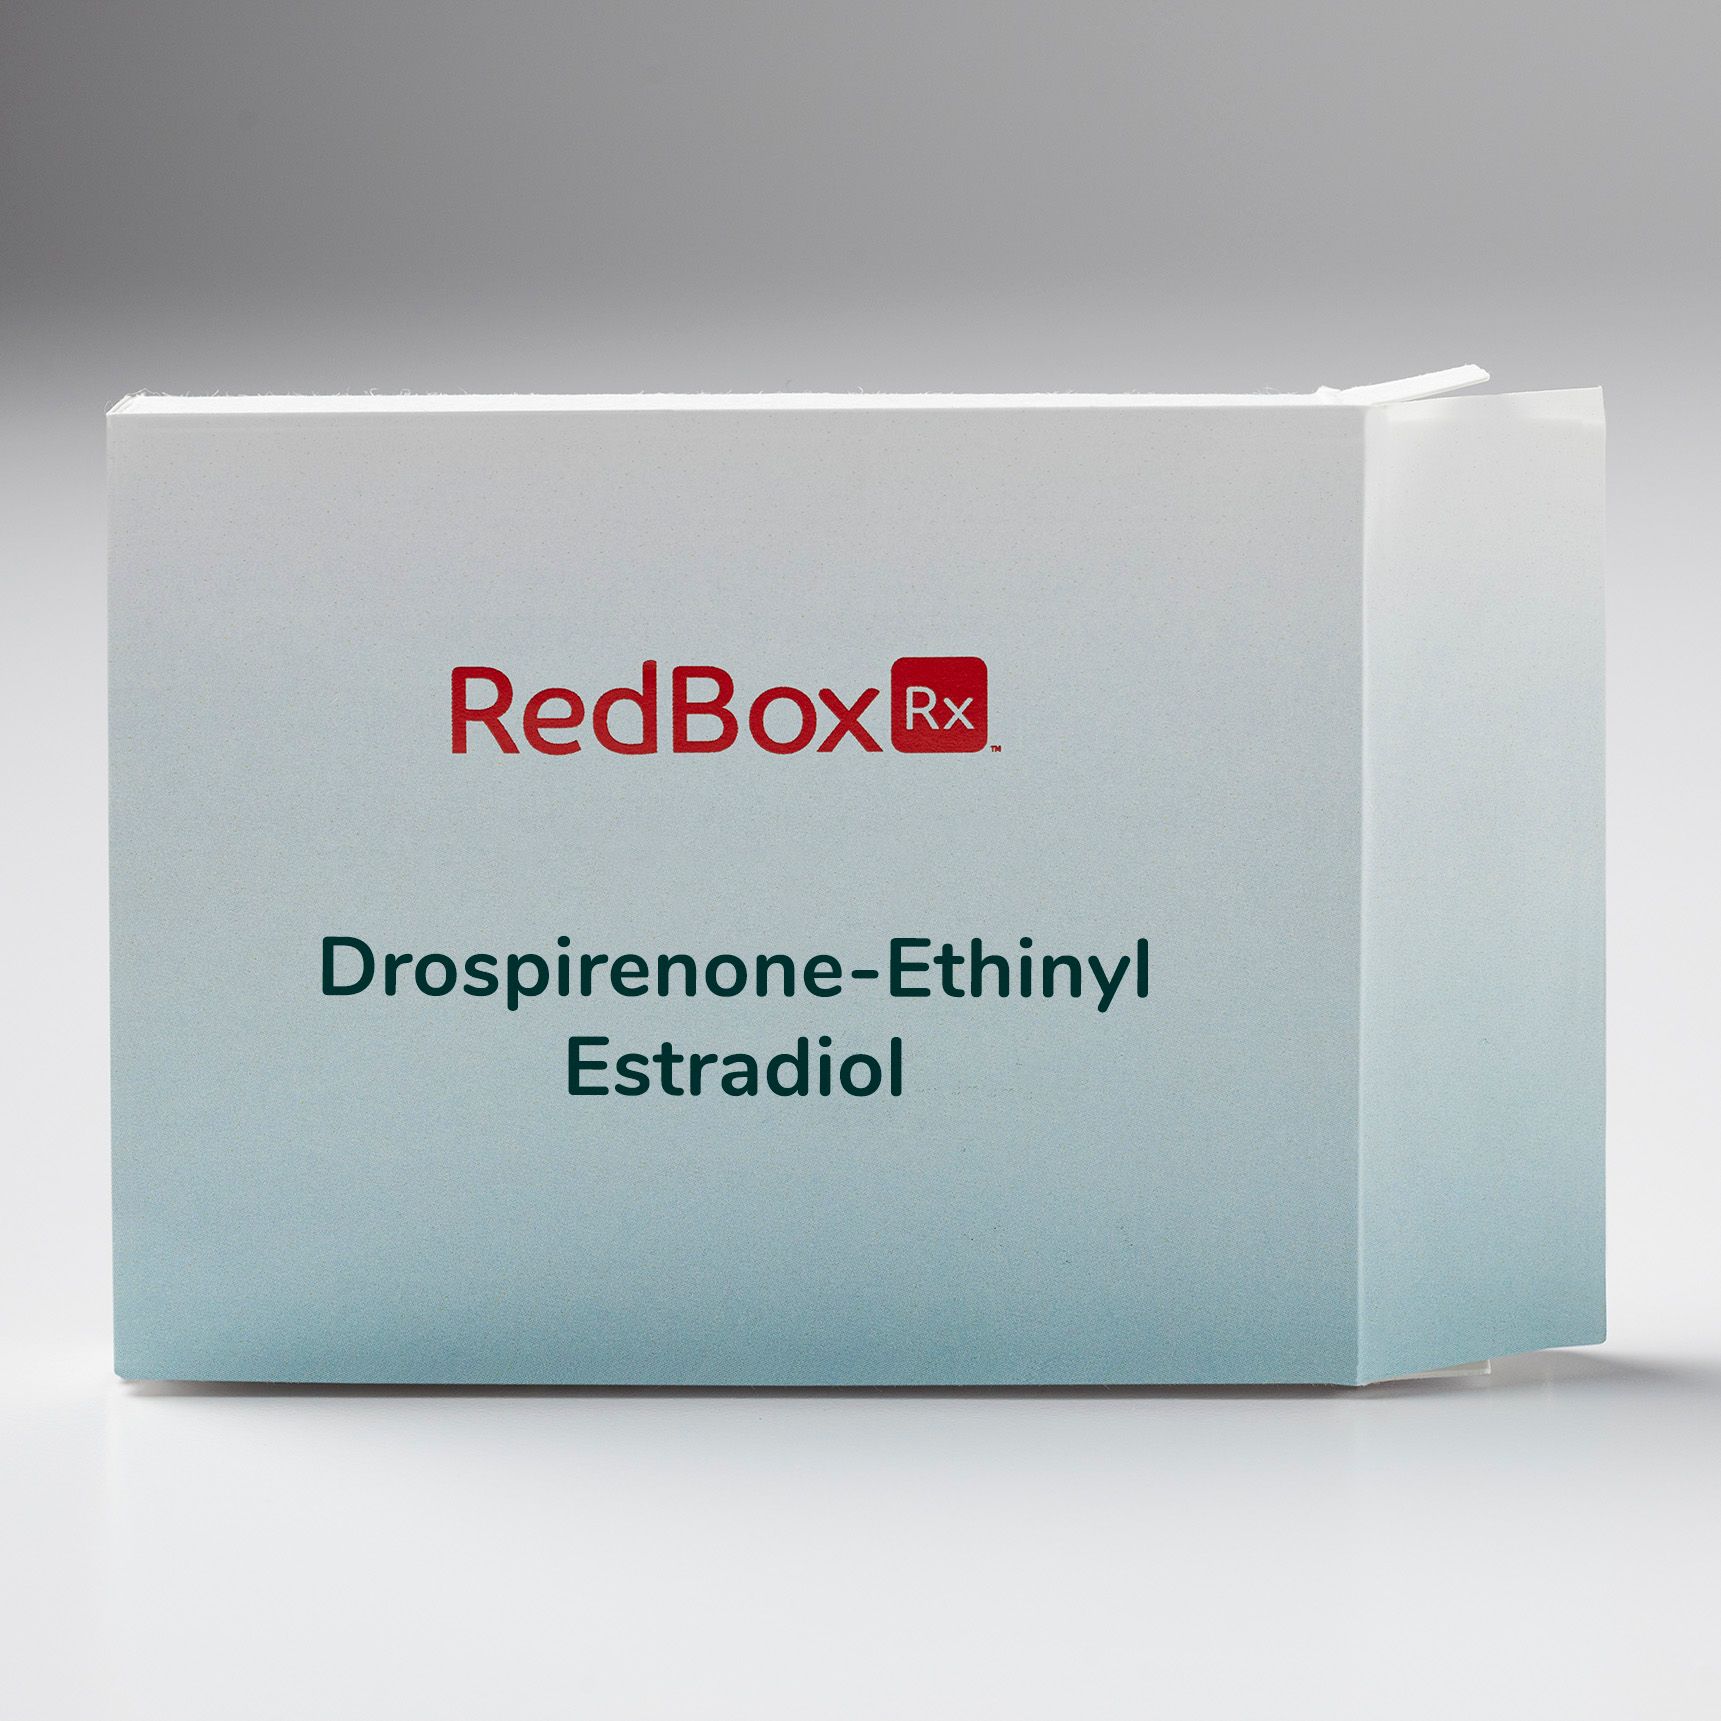 RedBox Rx Drospirenone-Ethinyl Estradiol Birth Control Box